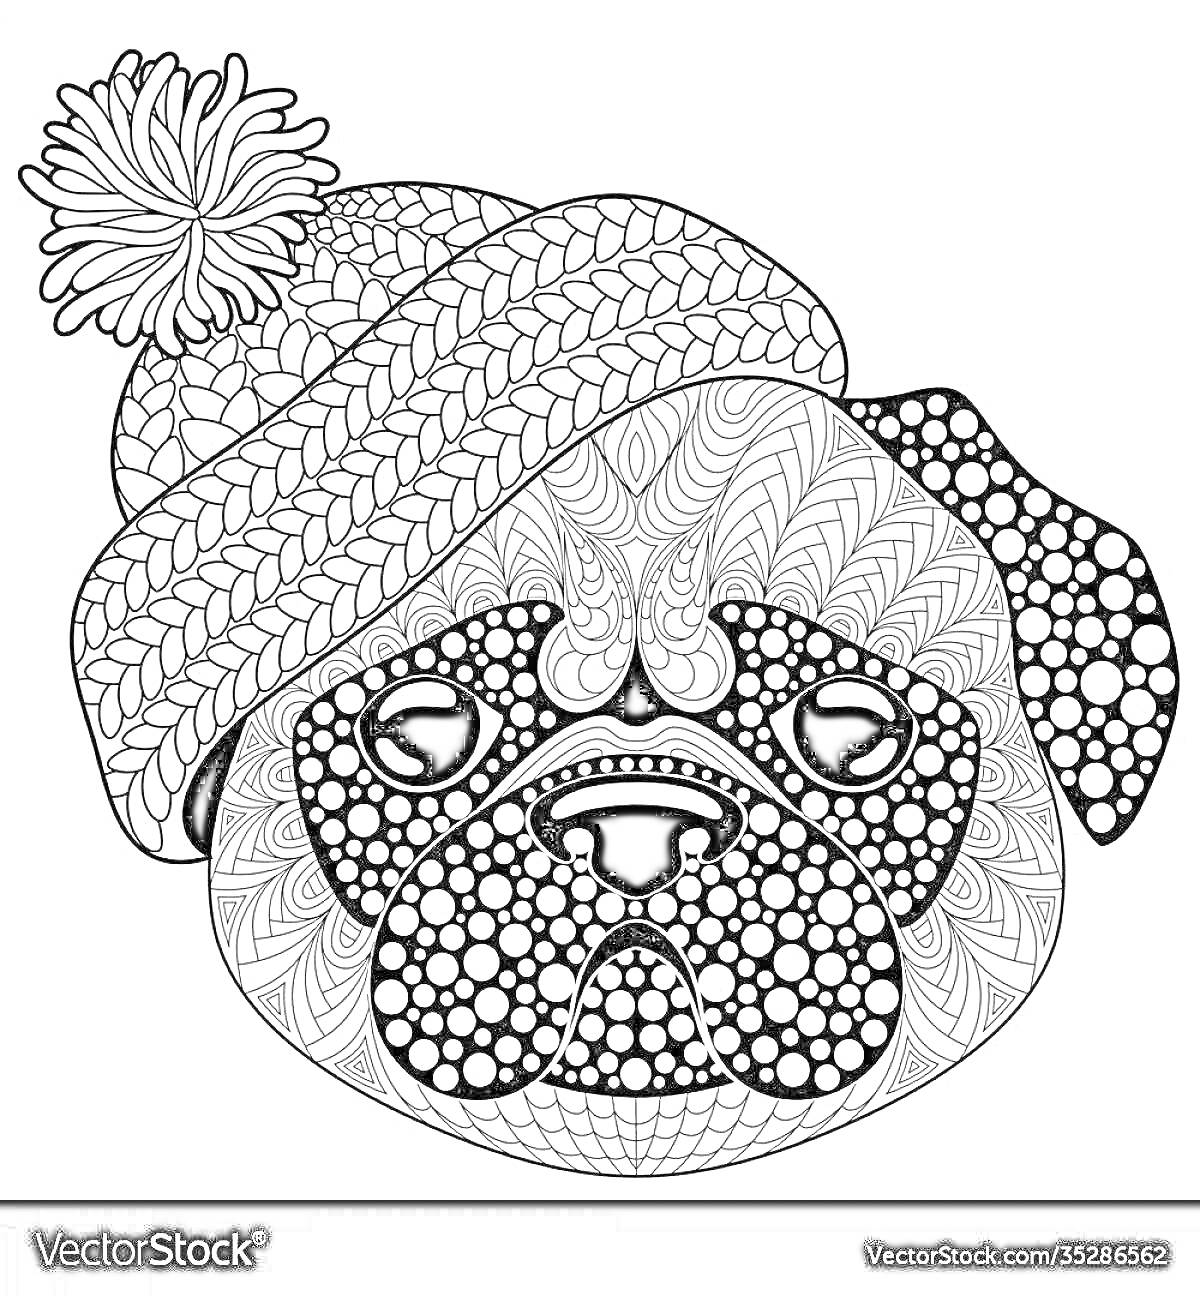 Раскраска Антистресс раскраска с мопсом в вязаной шапке с помпоном